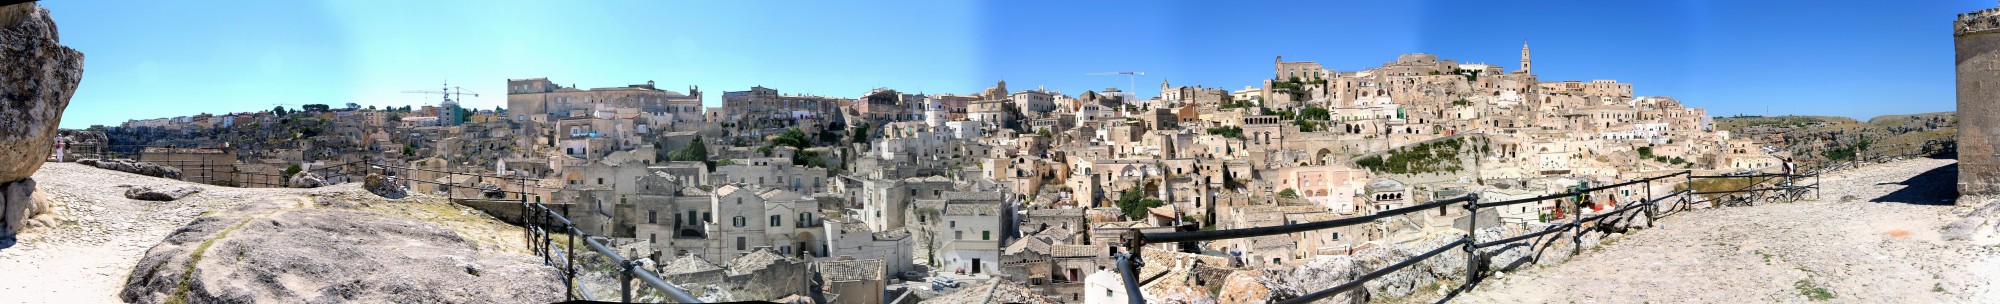 Matera panoramic view of i sassi